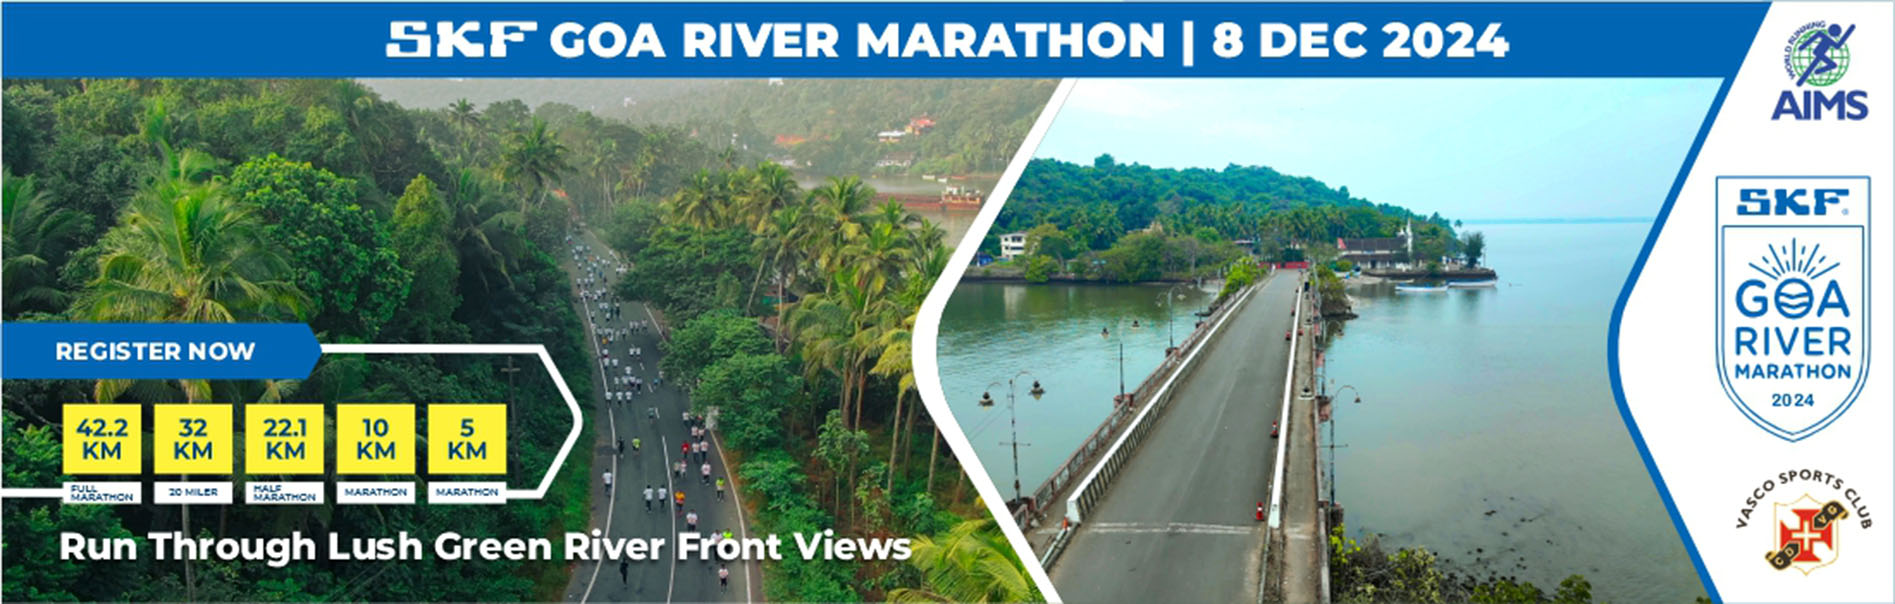 Skf Goa River Marathon 2024